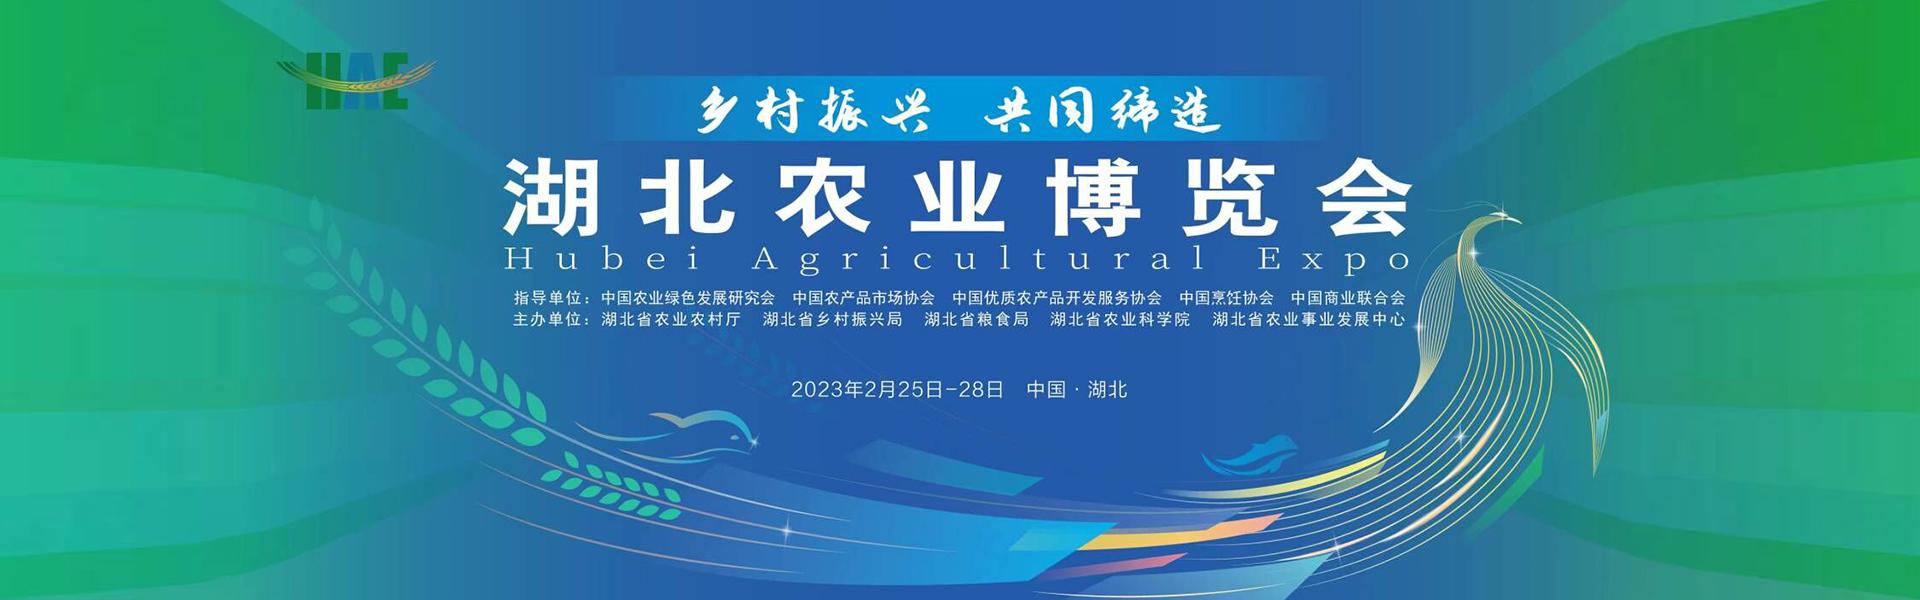 2023年湖北农业博览会2月25日到2月28日武汉国博中心举办